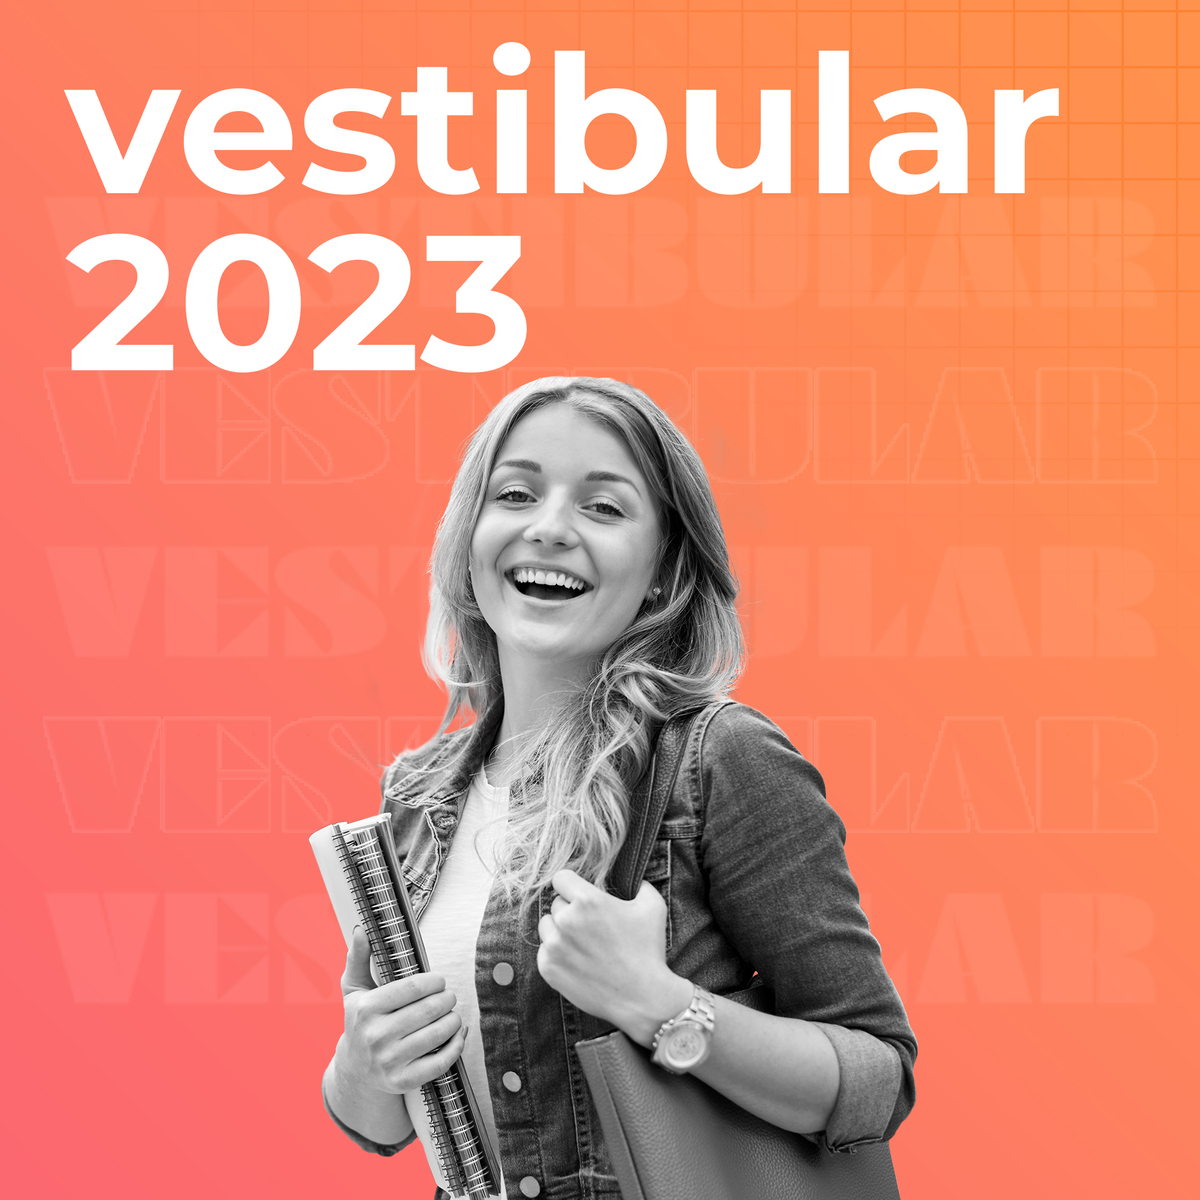 Vestibular 2022